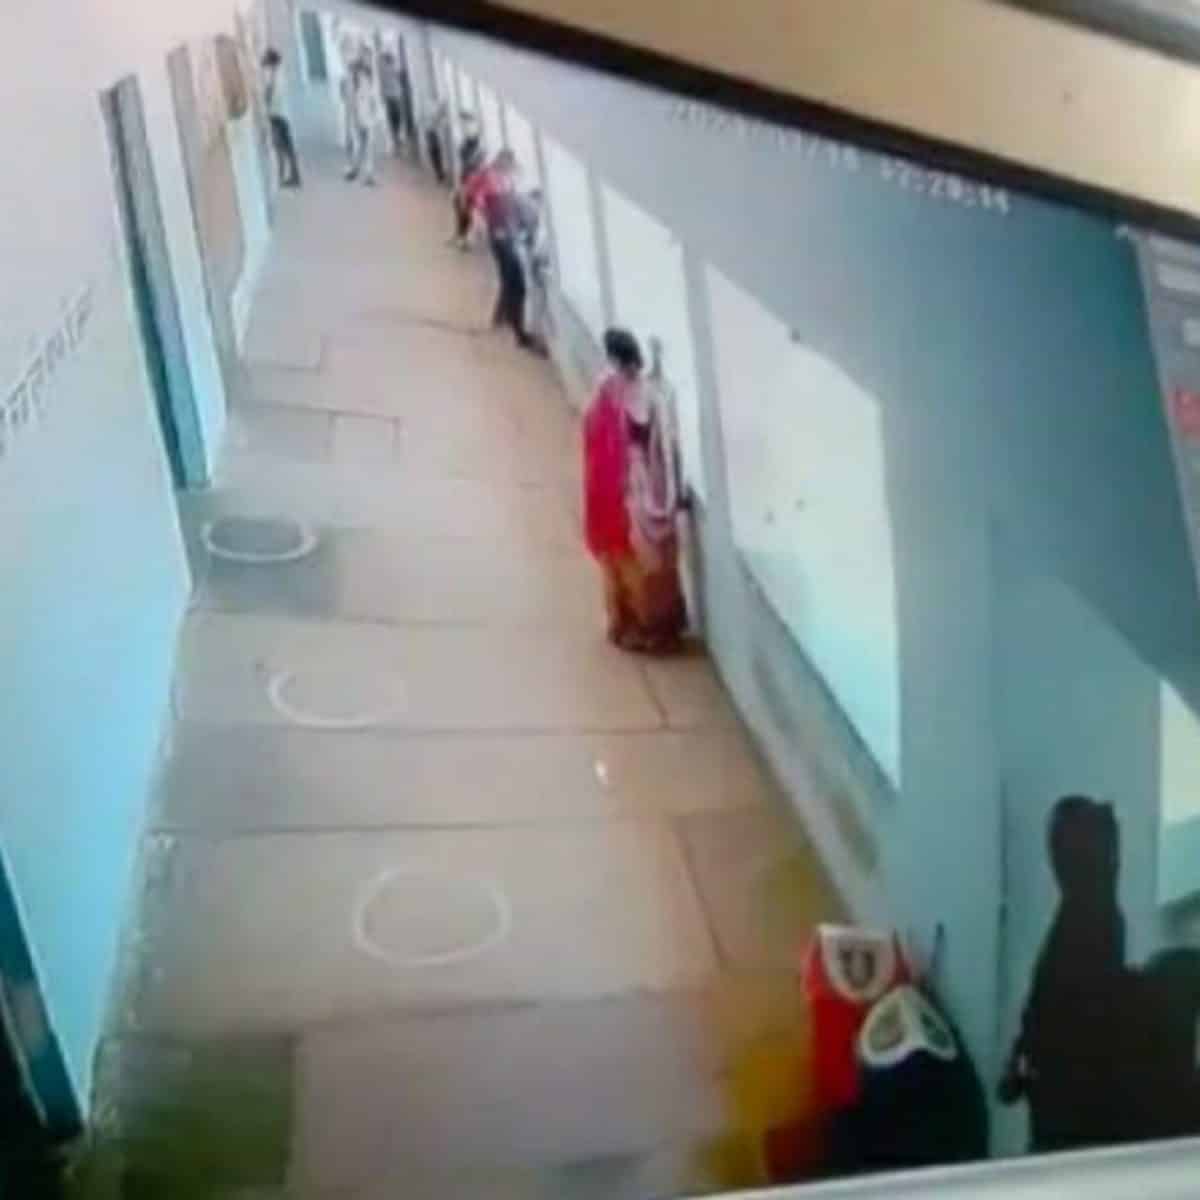 छात्रा के बैग से 50 हजार रुपये चोरी, सीसीटीवी में दिखीं एक महिला और लड़की